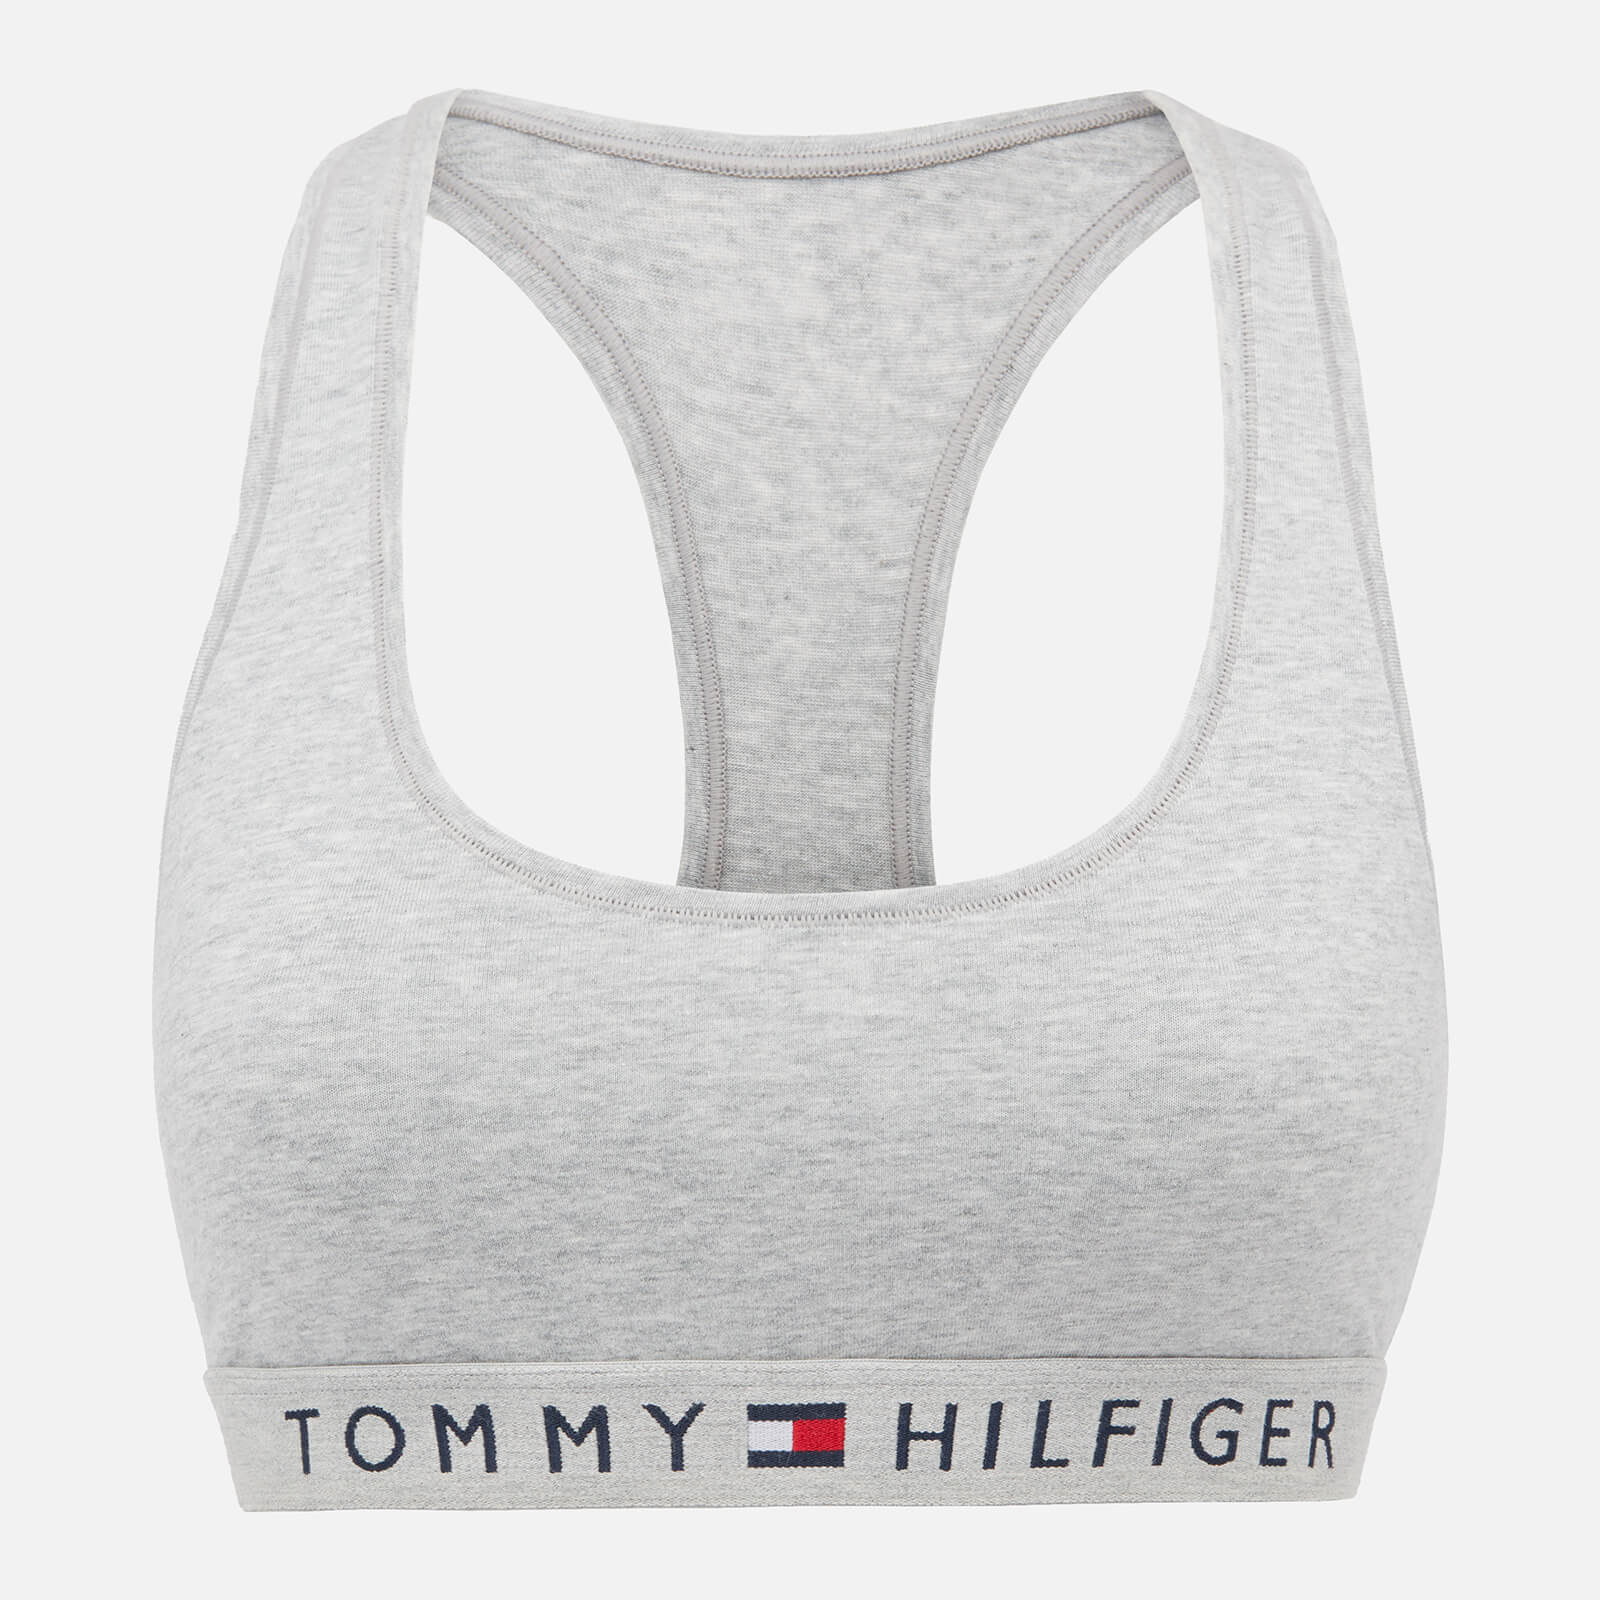 Tommy Hilfiger Women's Original Cotton Bralette - Grey Heather - XS